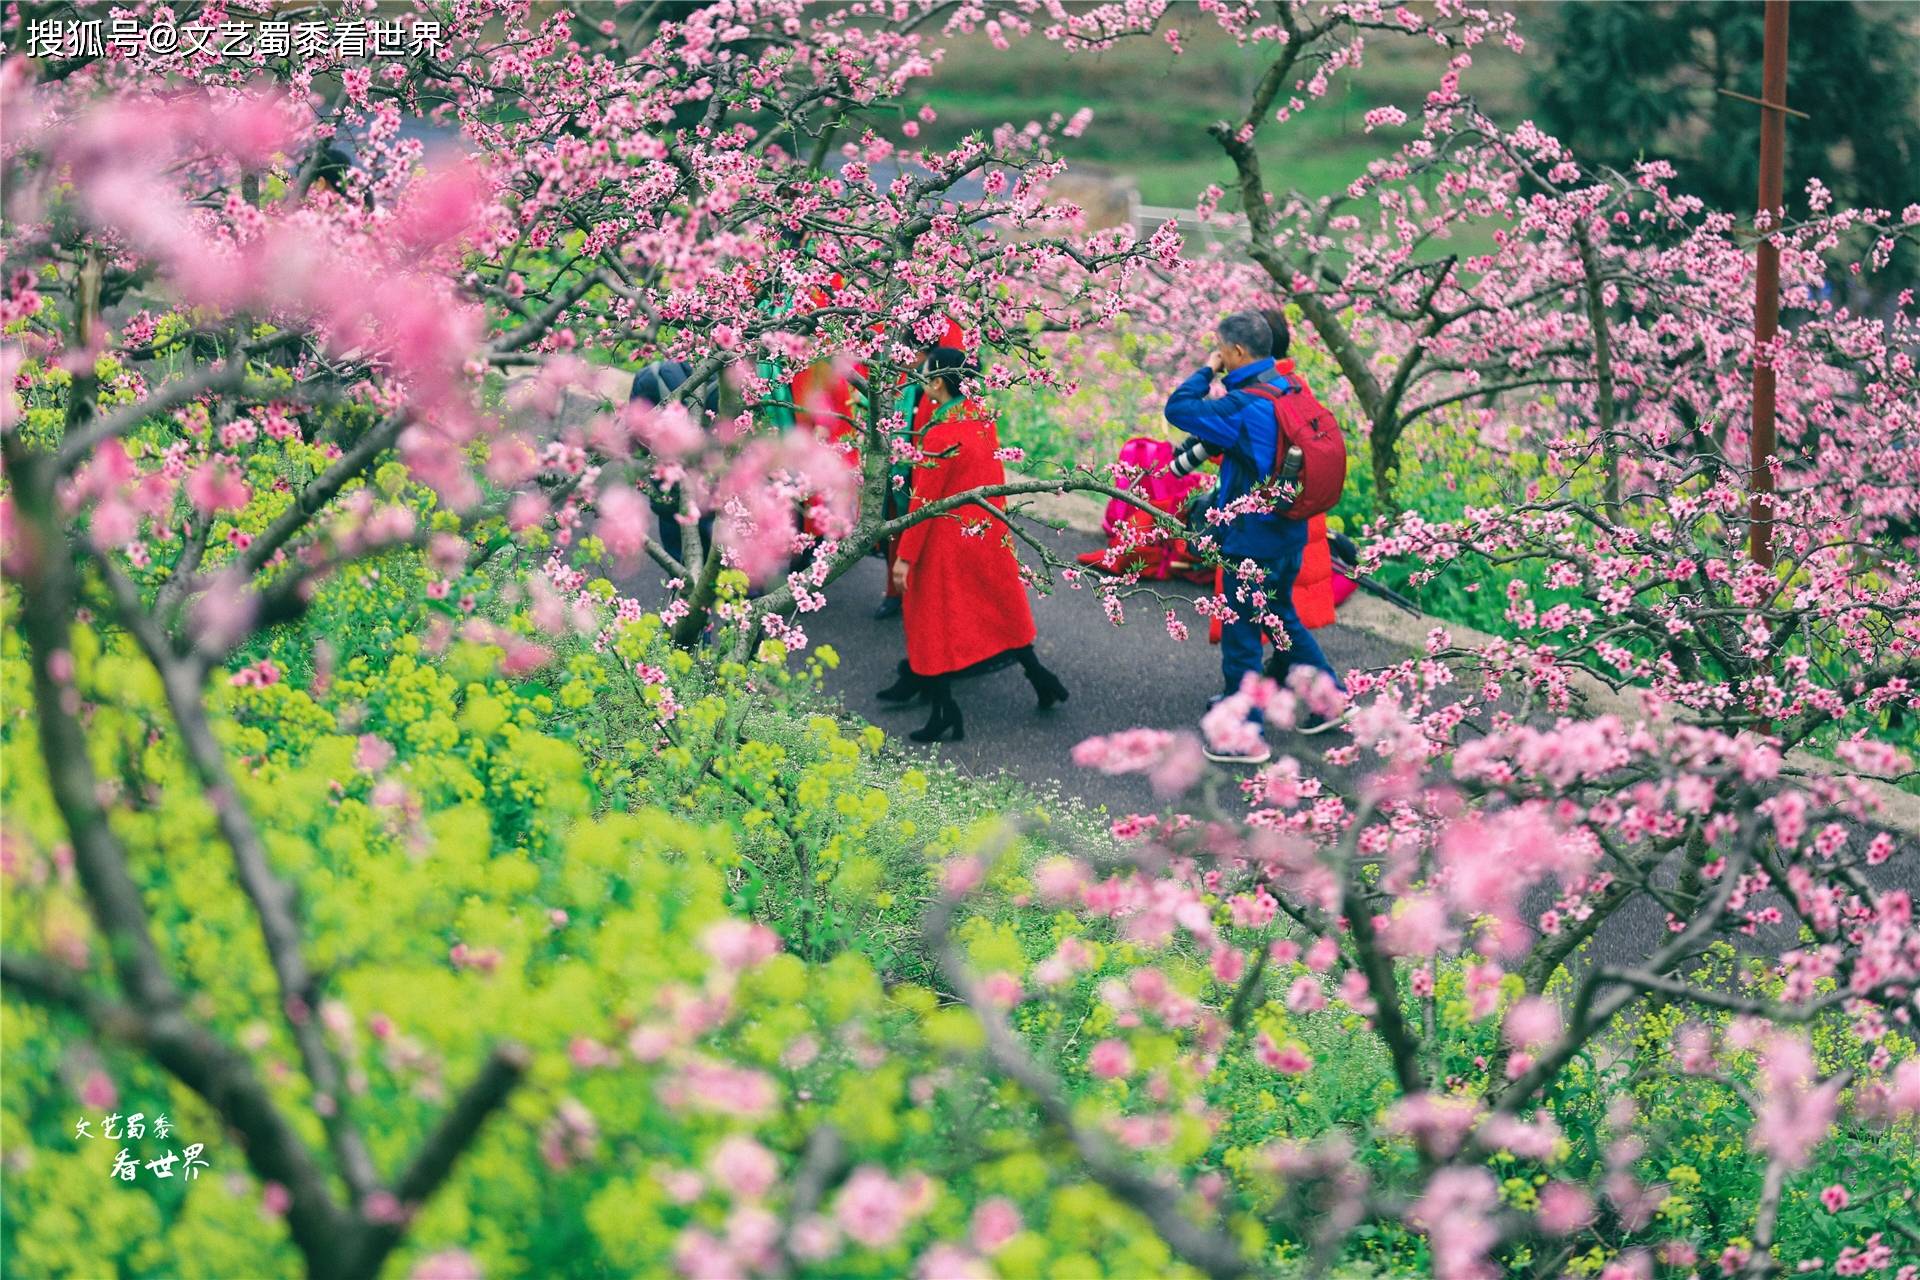 又到了贵州赏花季，推荐一个漫山遍野的花海，人少景美还免费